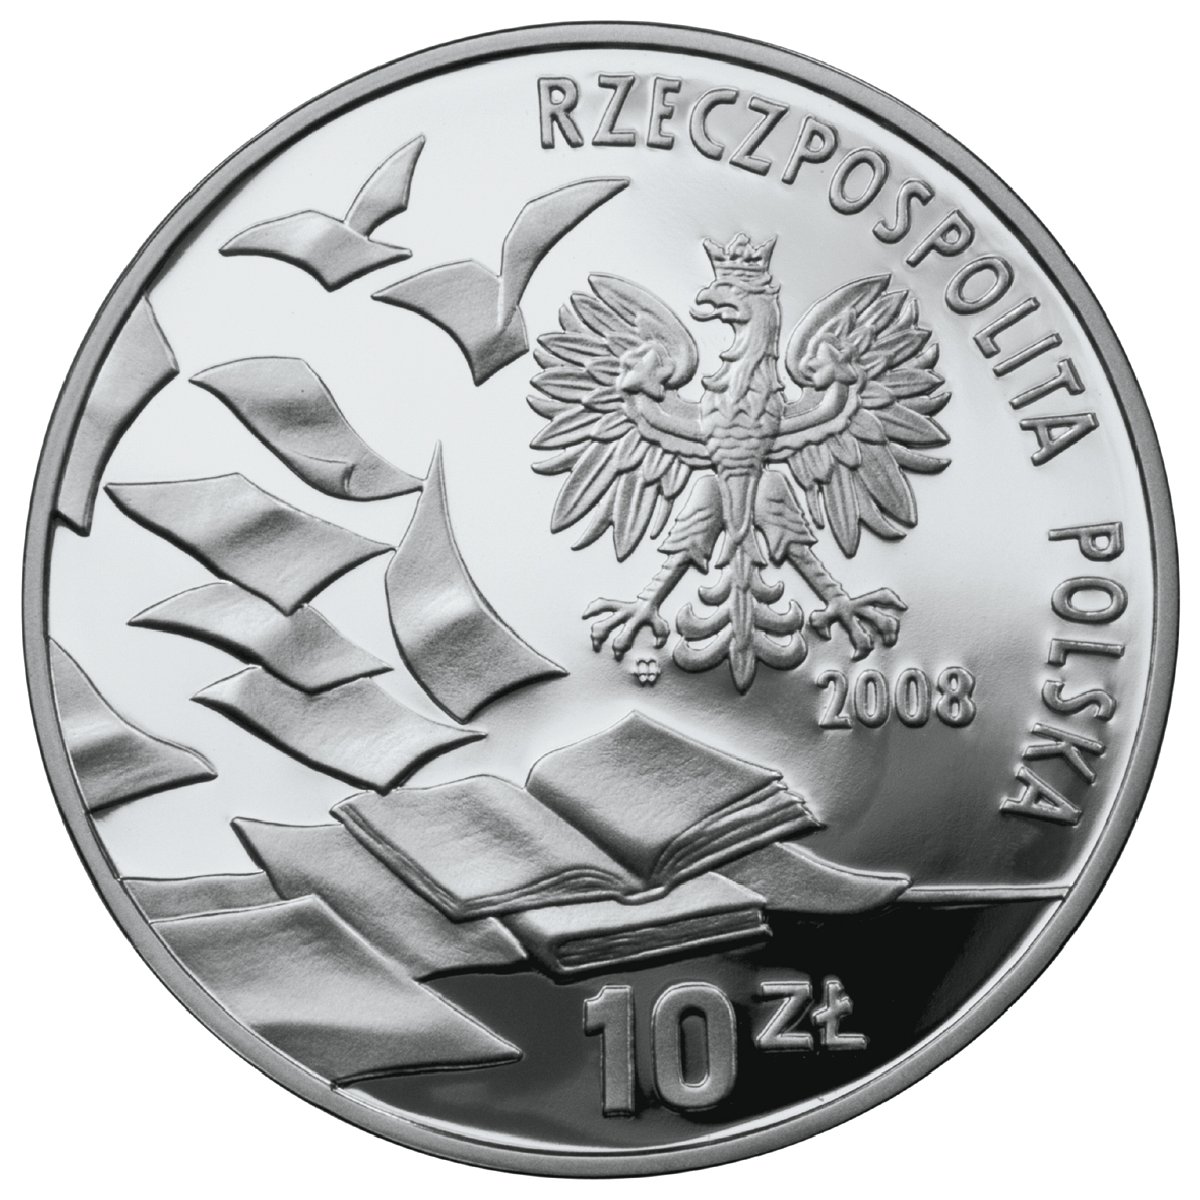 10zl-40-rocznica-marca-68-awers-monety